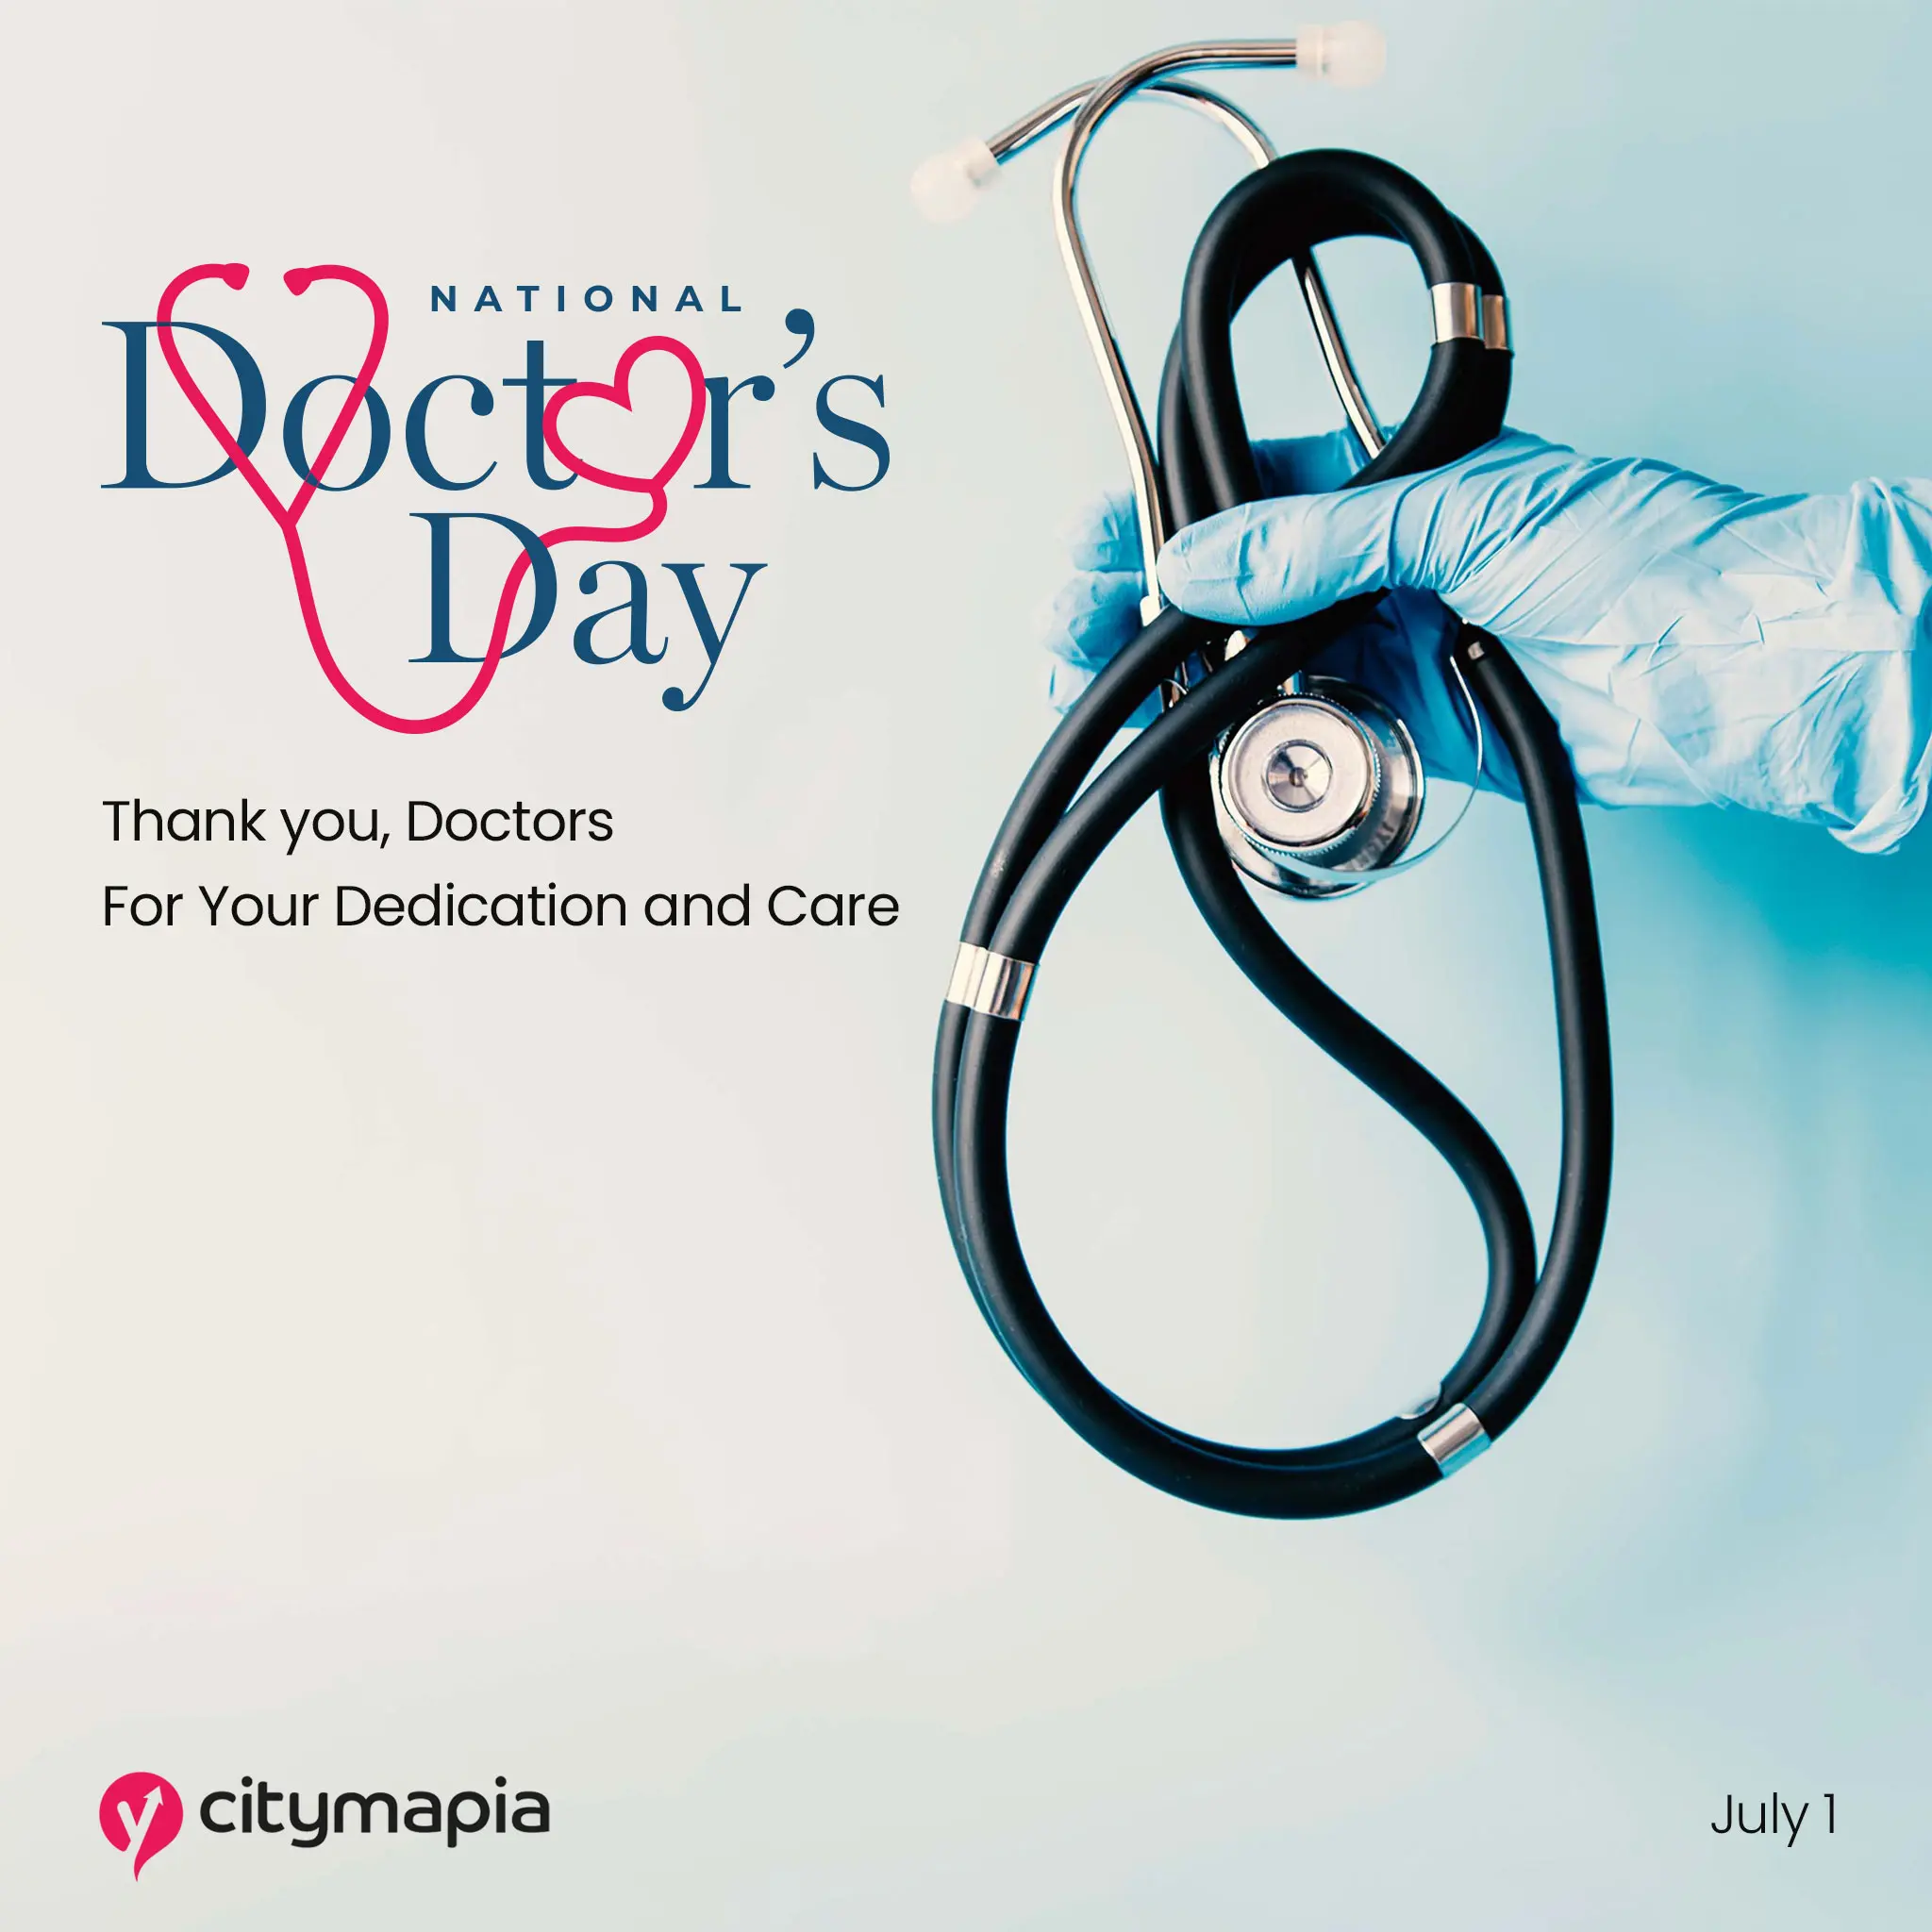 Happy Doctors' Day